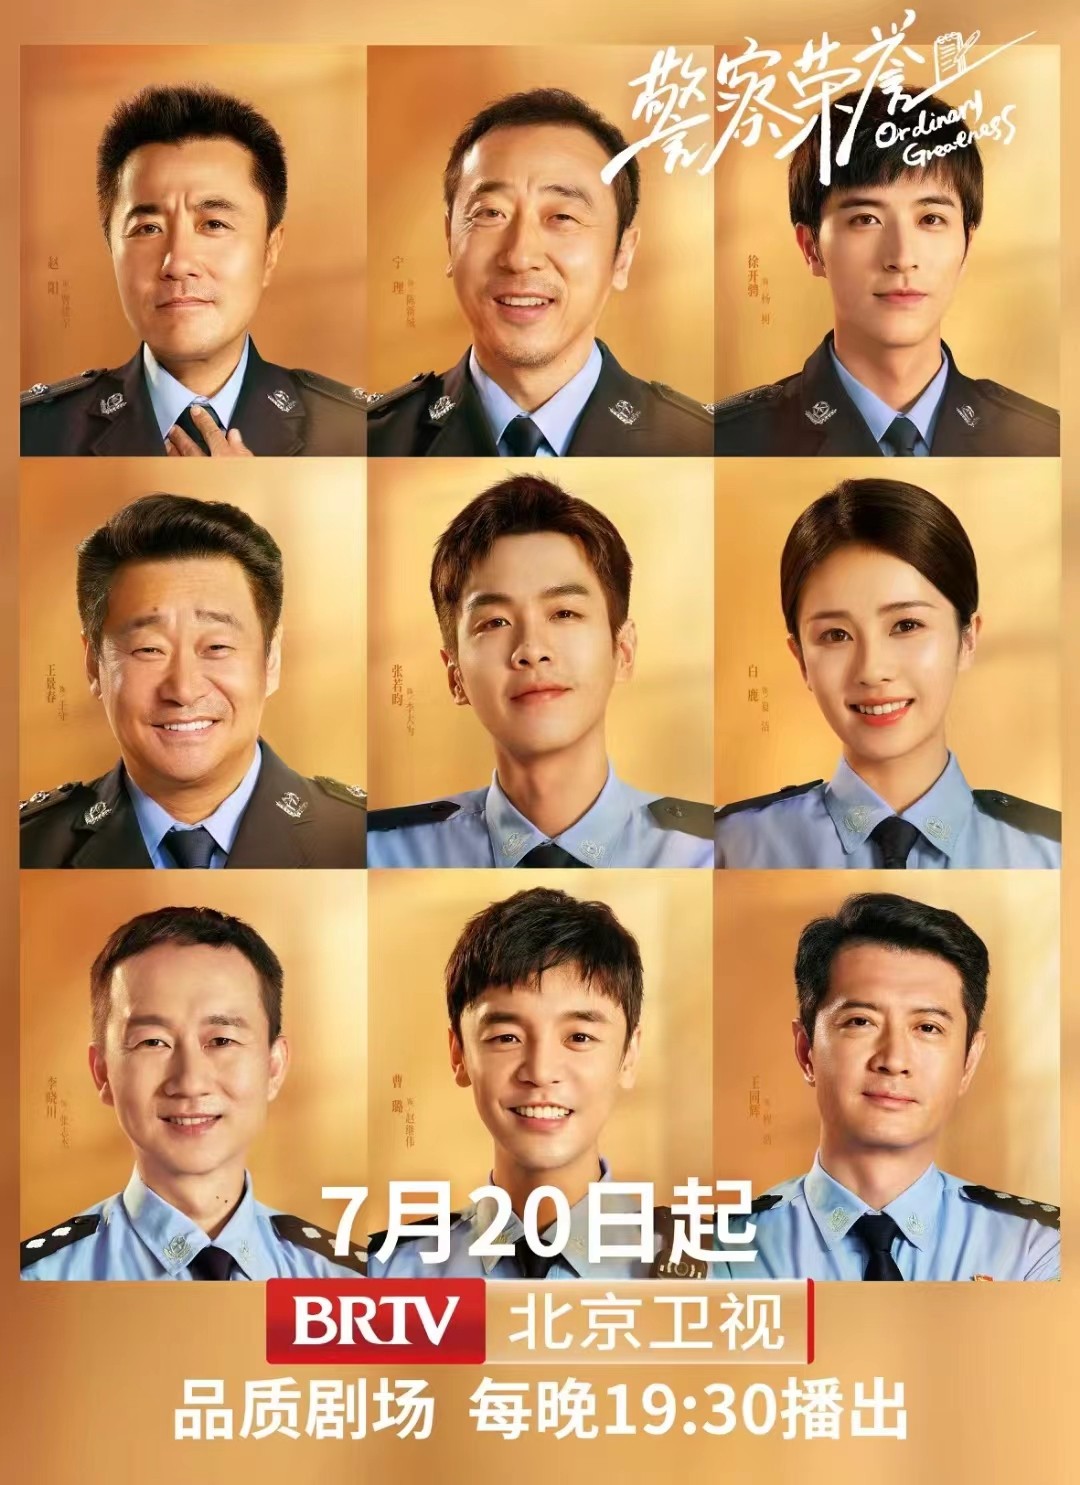 评分8.6的高分剧《警察荣誉》7月20日将在北京卫视品质剧场上星播出